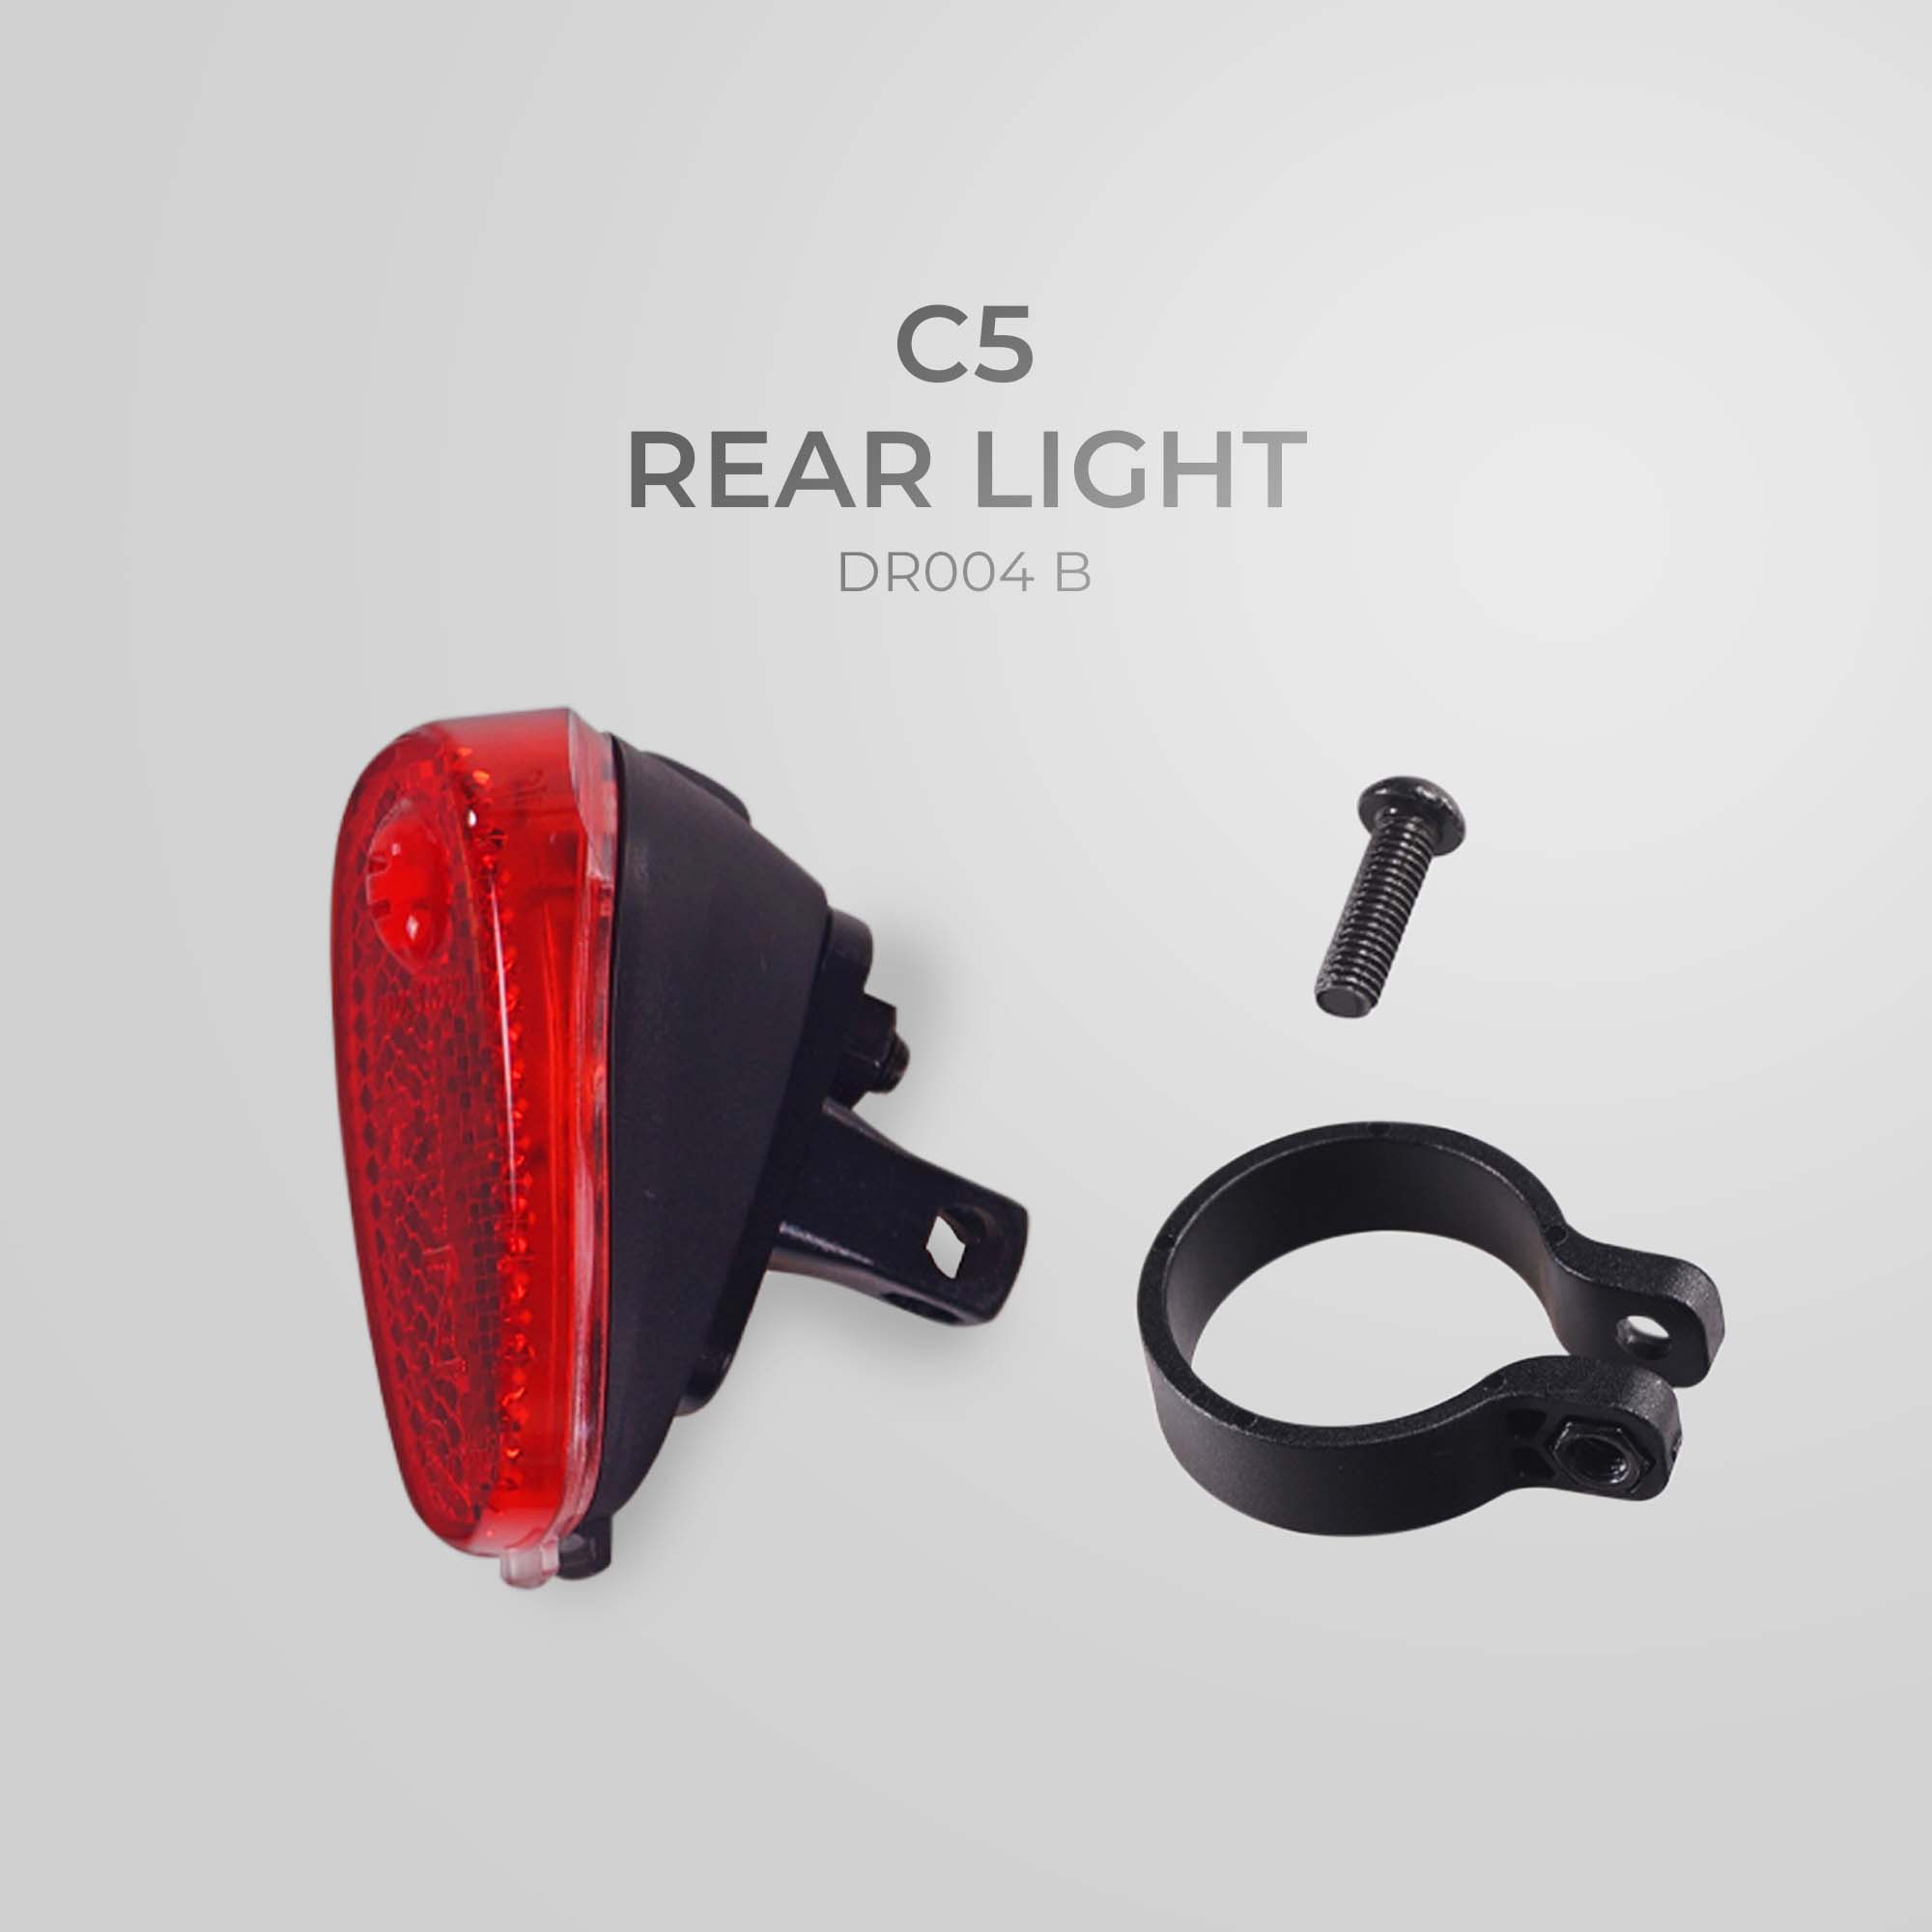 REAR LIGHT C5 DR004 B FOR NCM